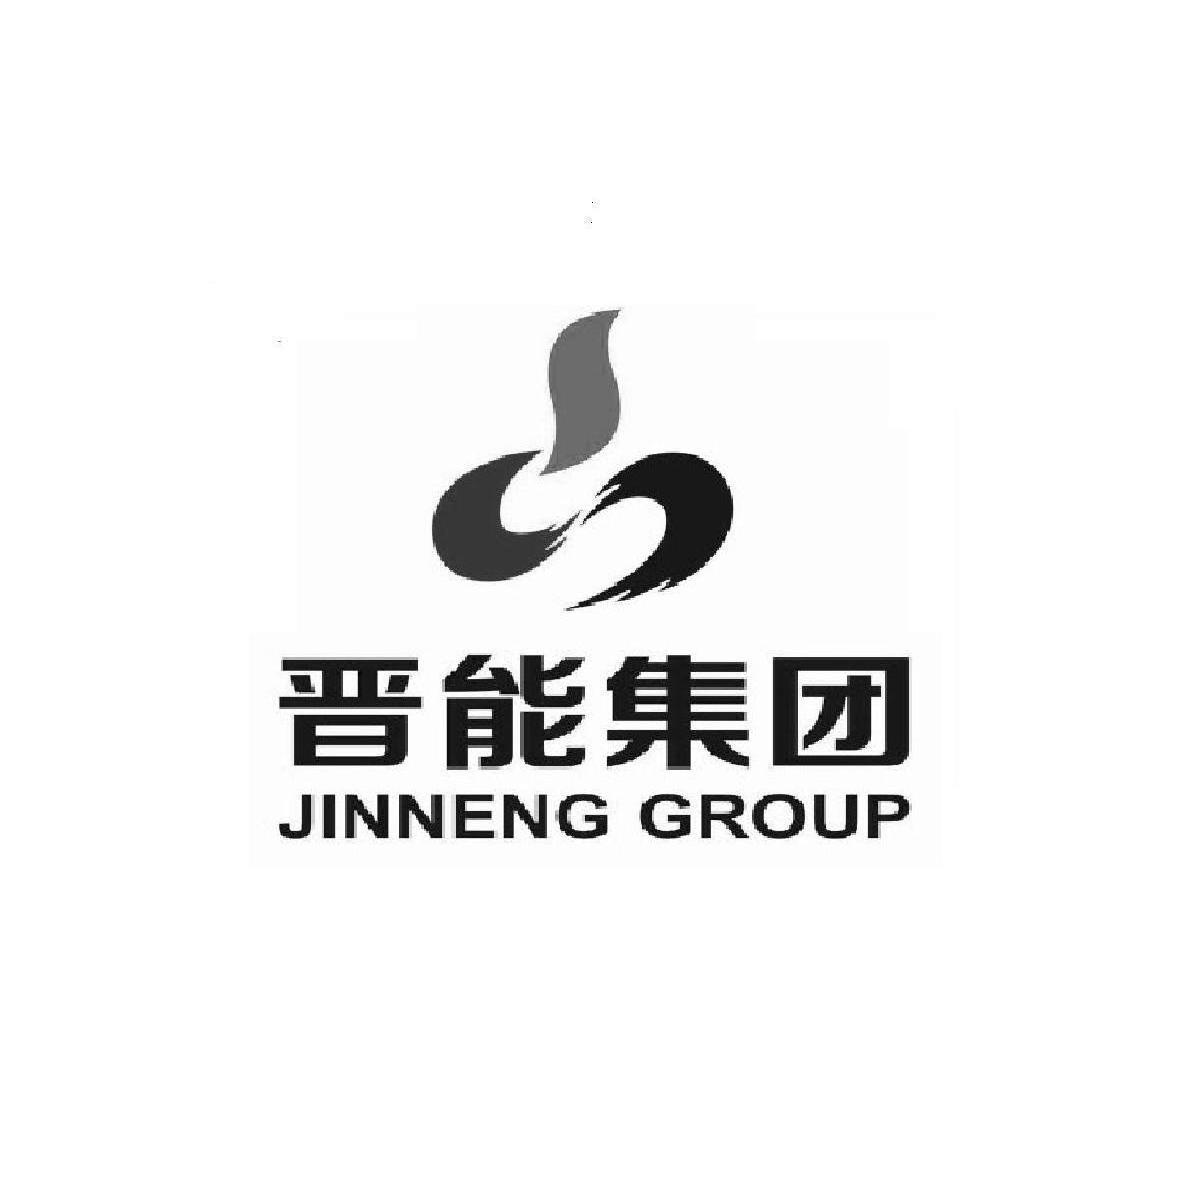 晋能集团 jinneng group